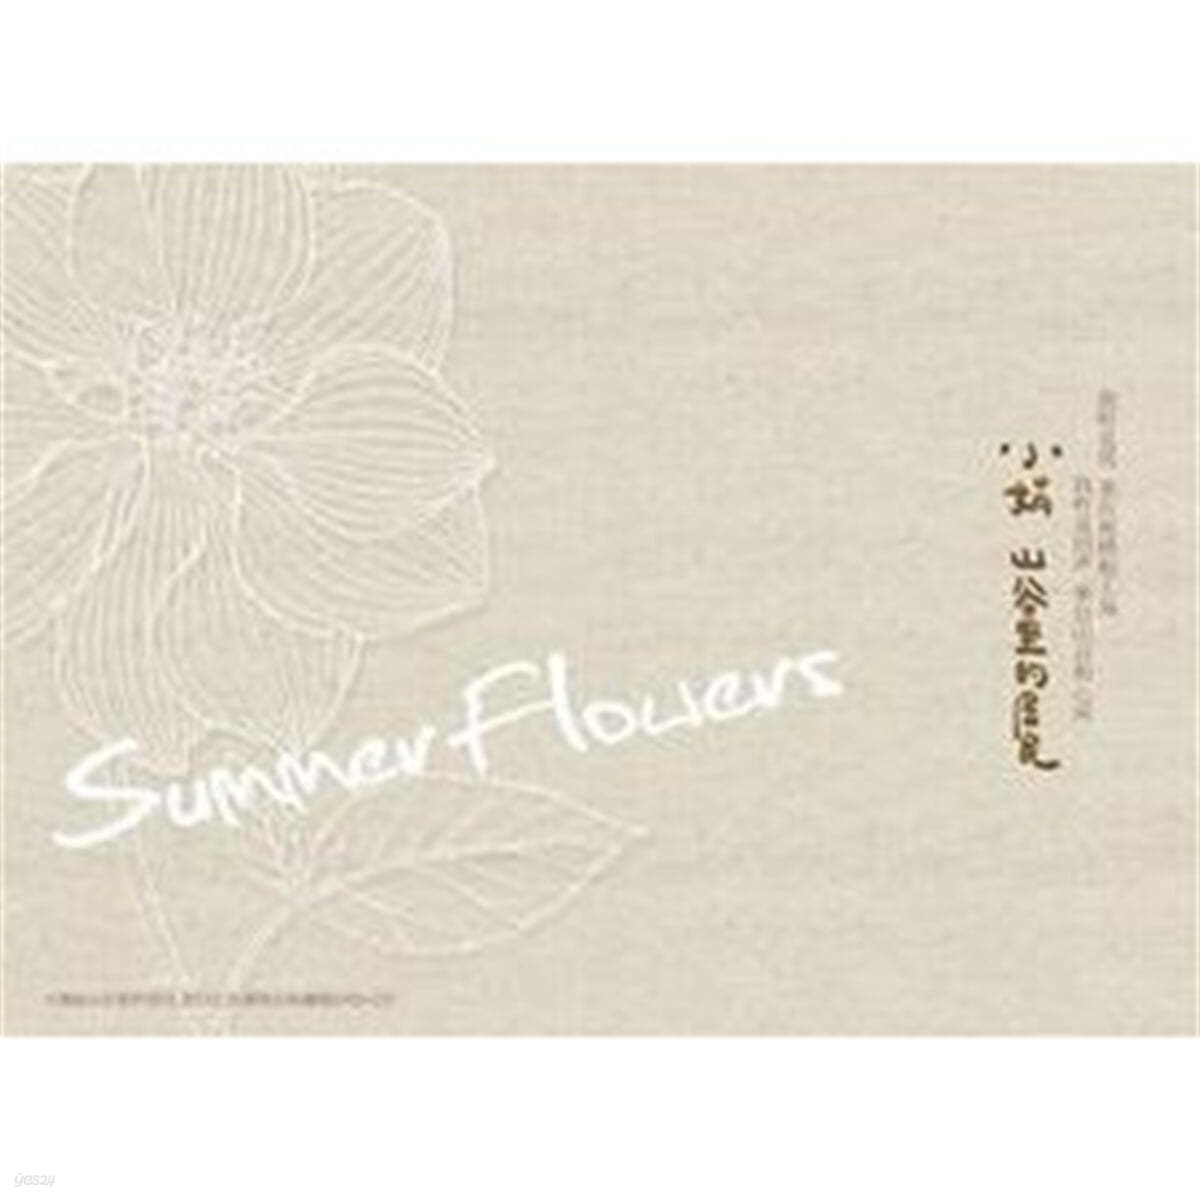 Xiao Juan (소연) - Summer Flowers  